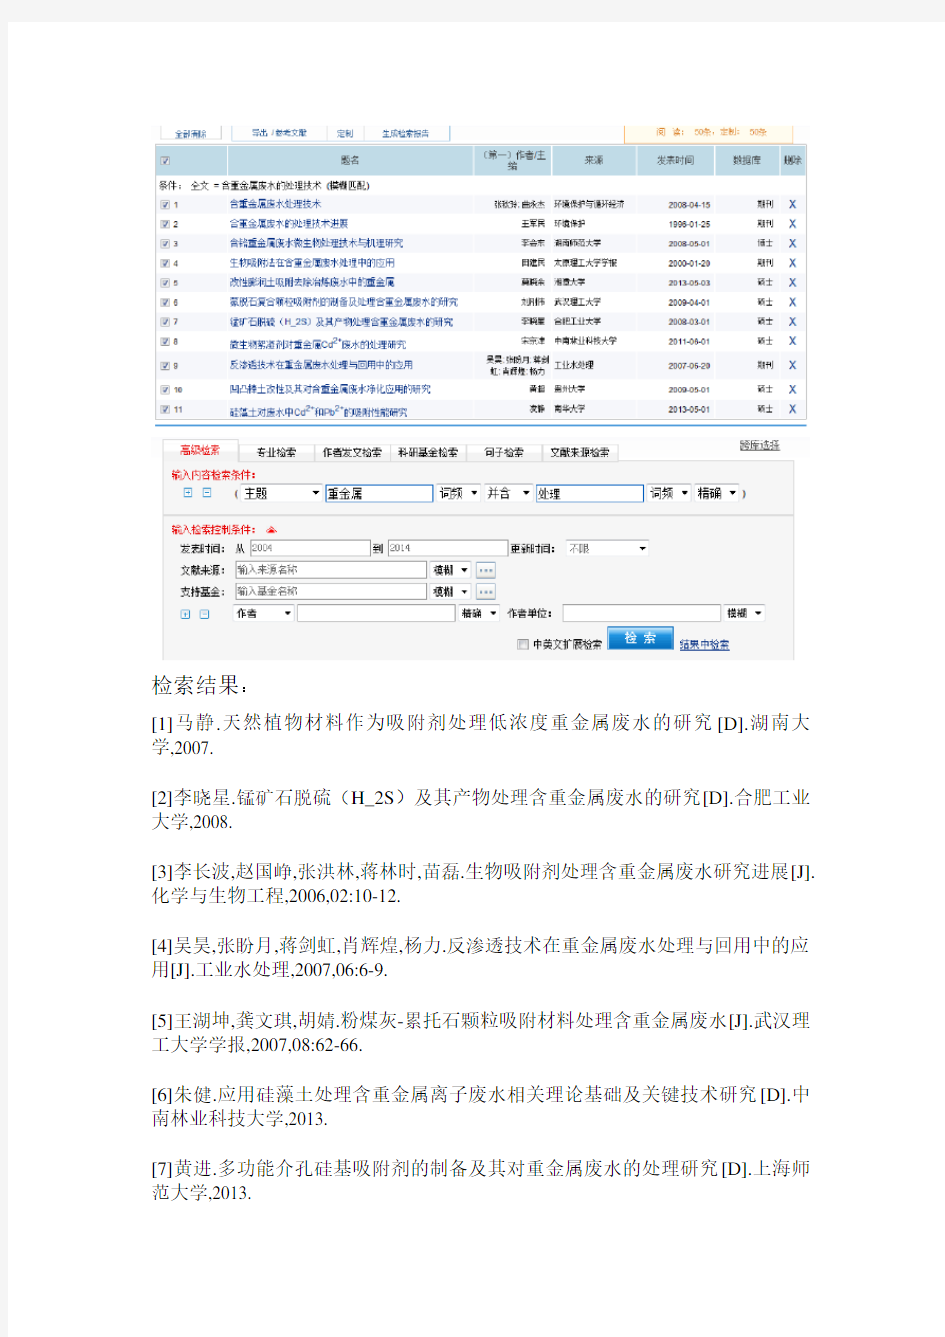 中文数据库检索报告